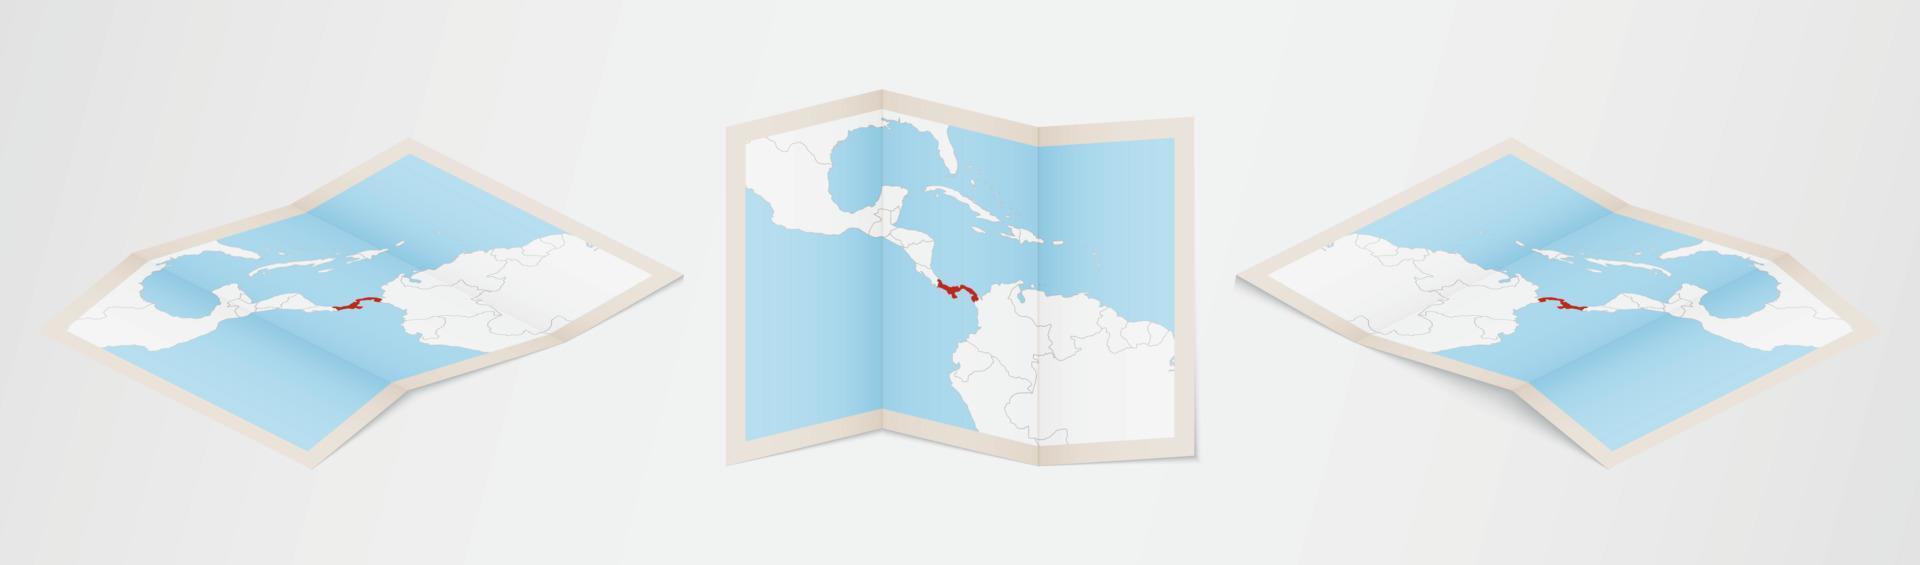 Faltkarte von Panama in drei verschiedenen Versionen. vektor